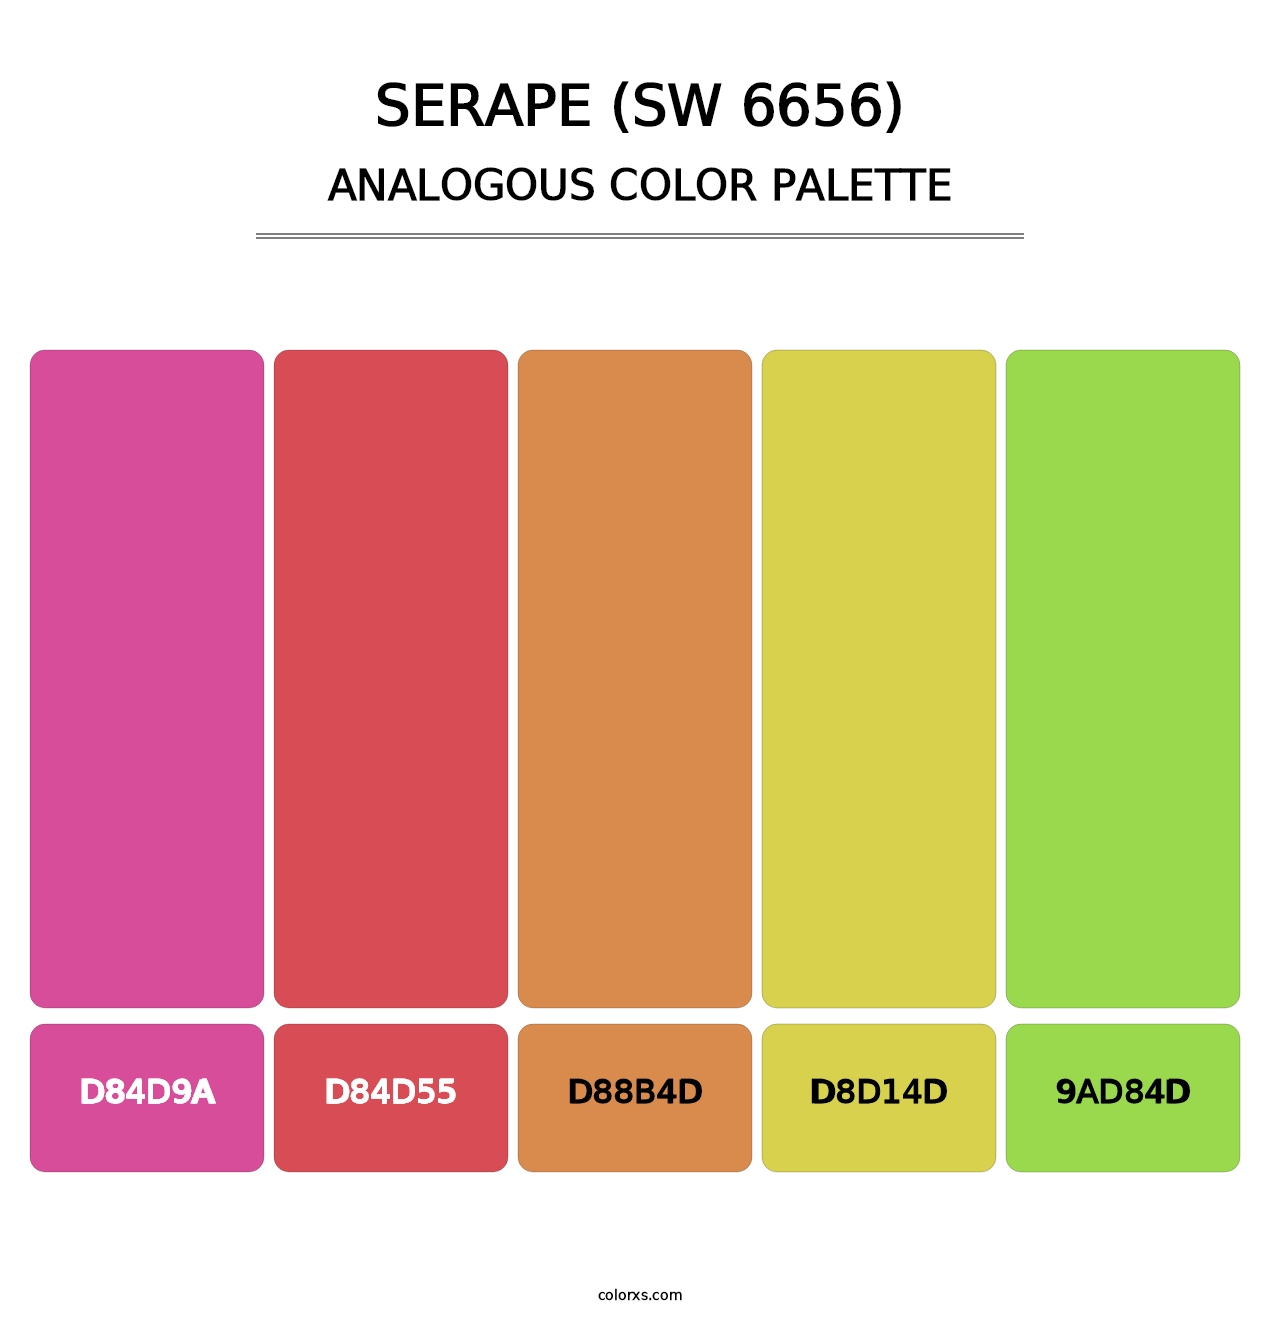 Serape (SW 6656) - Analogous Color Palette